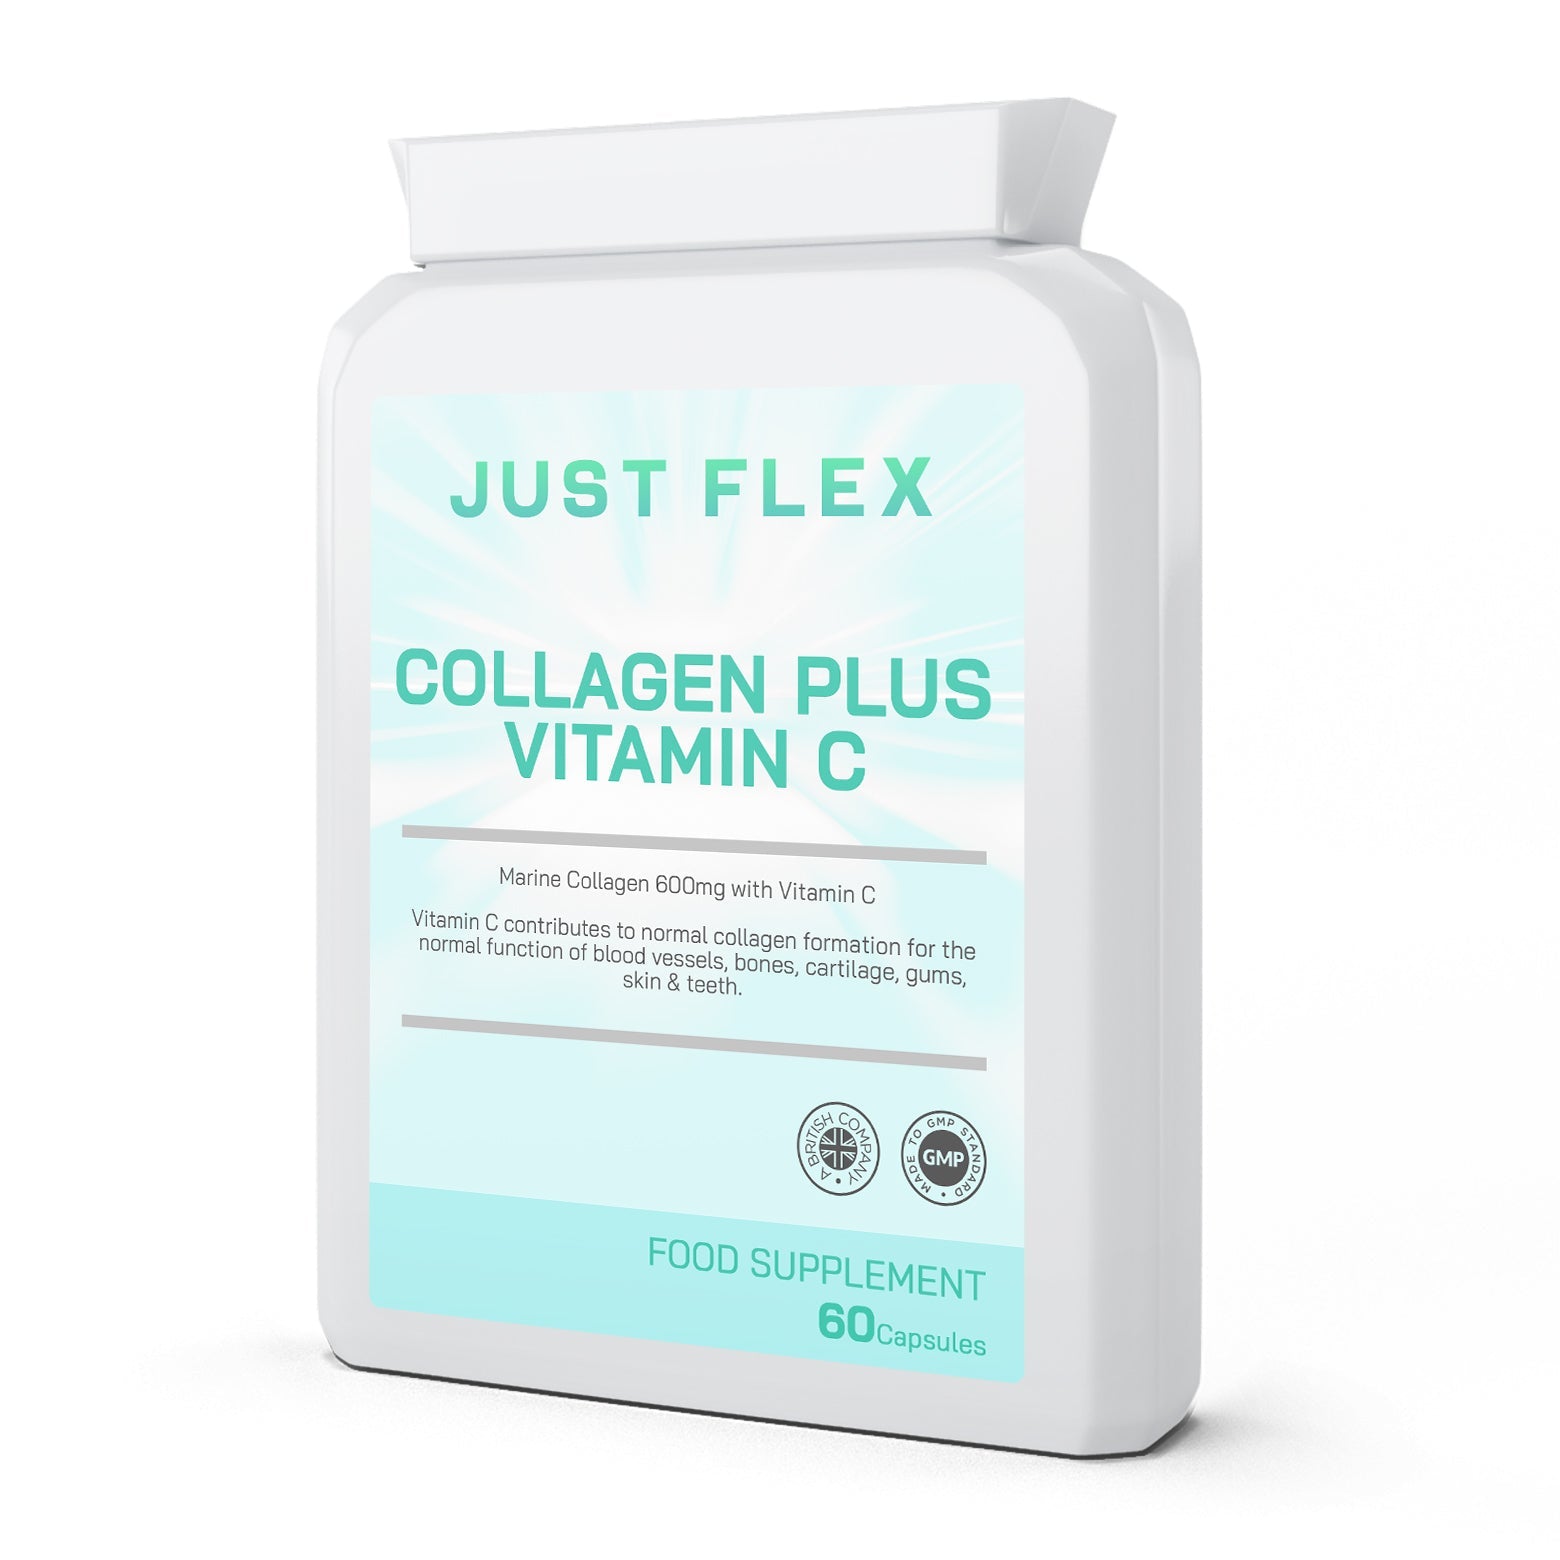 Just Flex Collagen Plus Vitamin C 60 Capsules 600mg - Just Flex